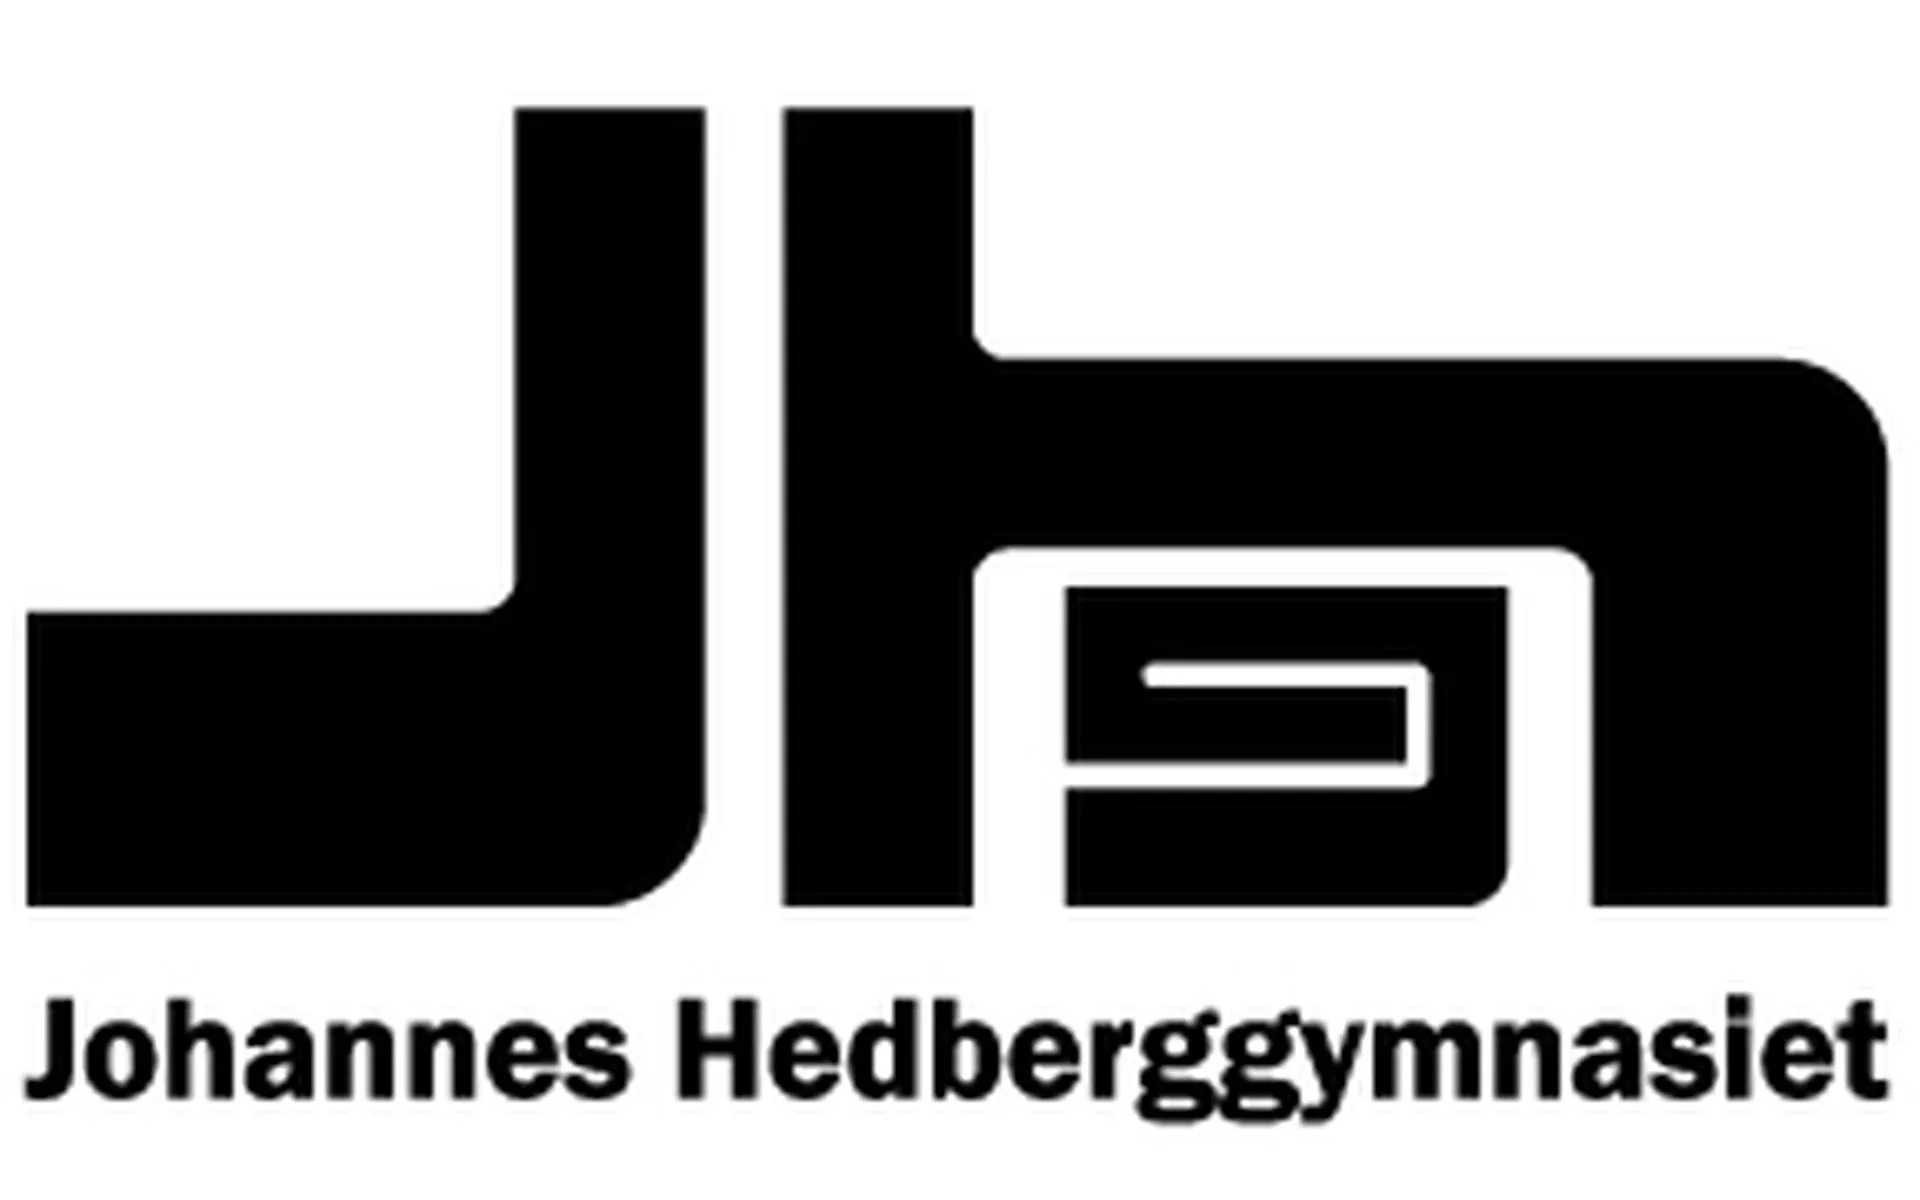 Johannes Hedberggymnasiet